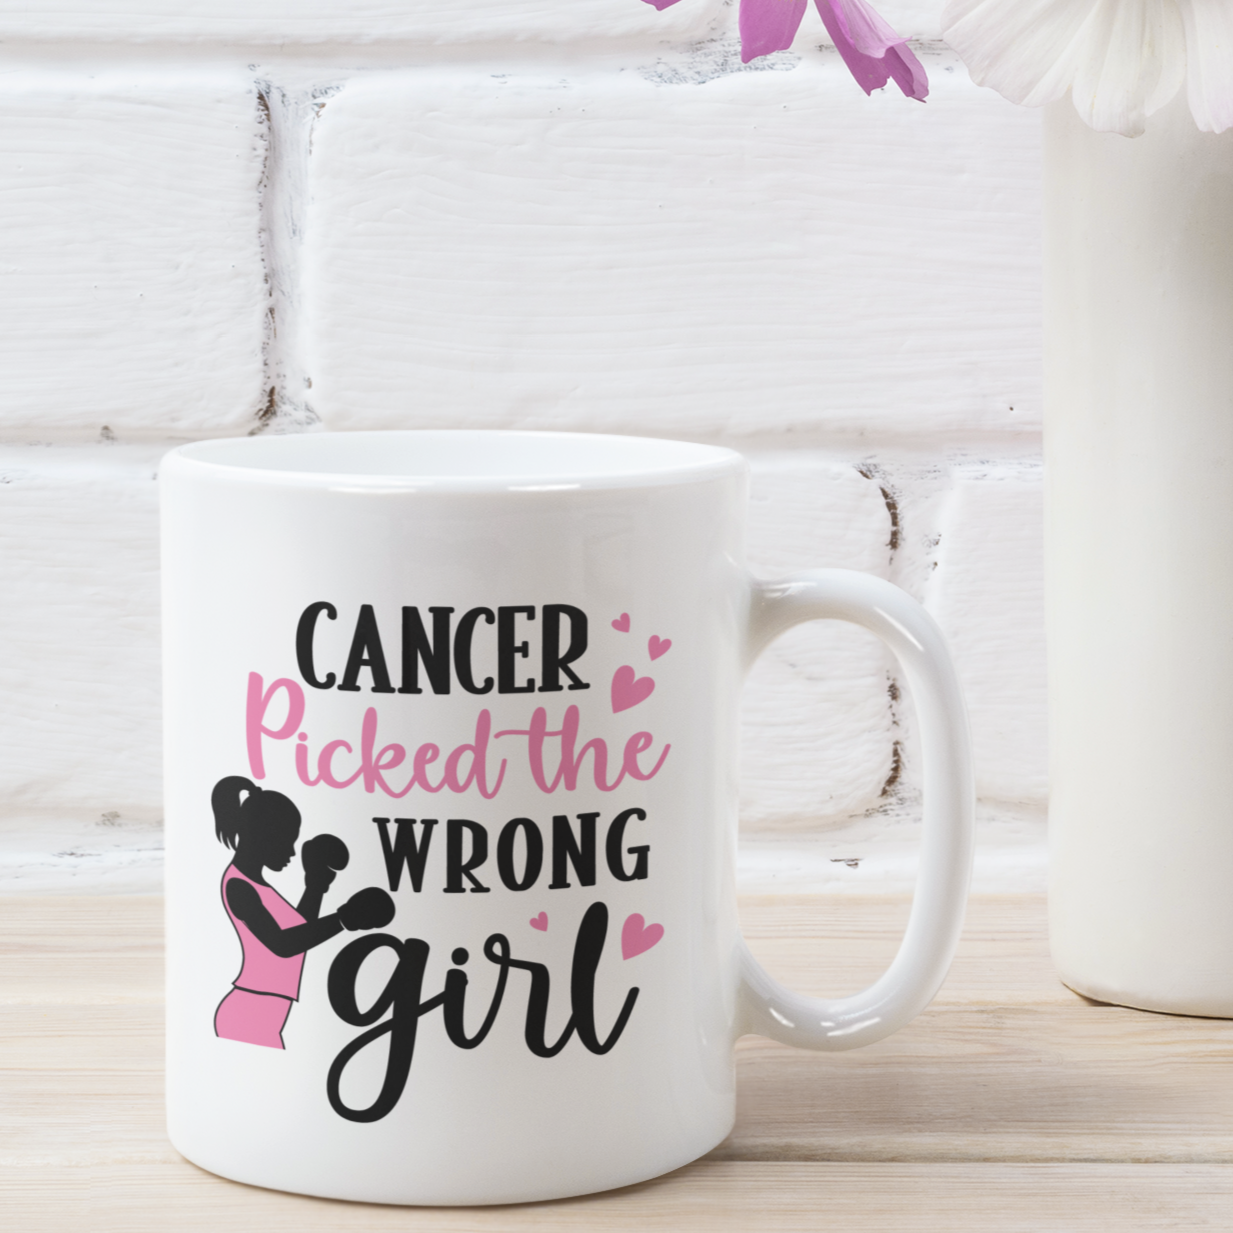 Cancer Picked the Wrong Girl Mug